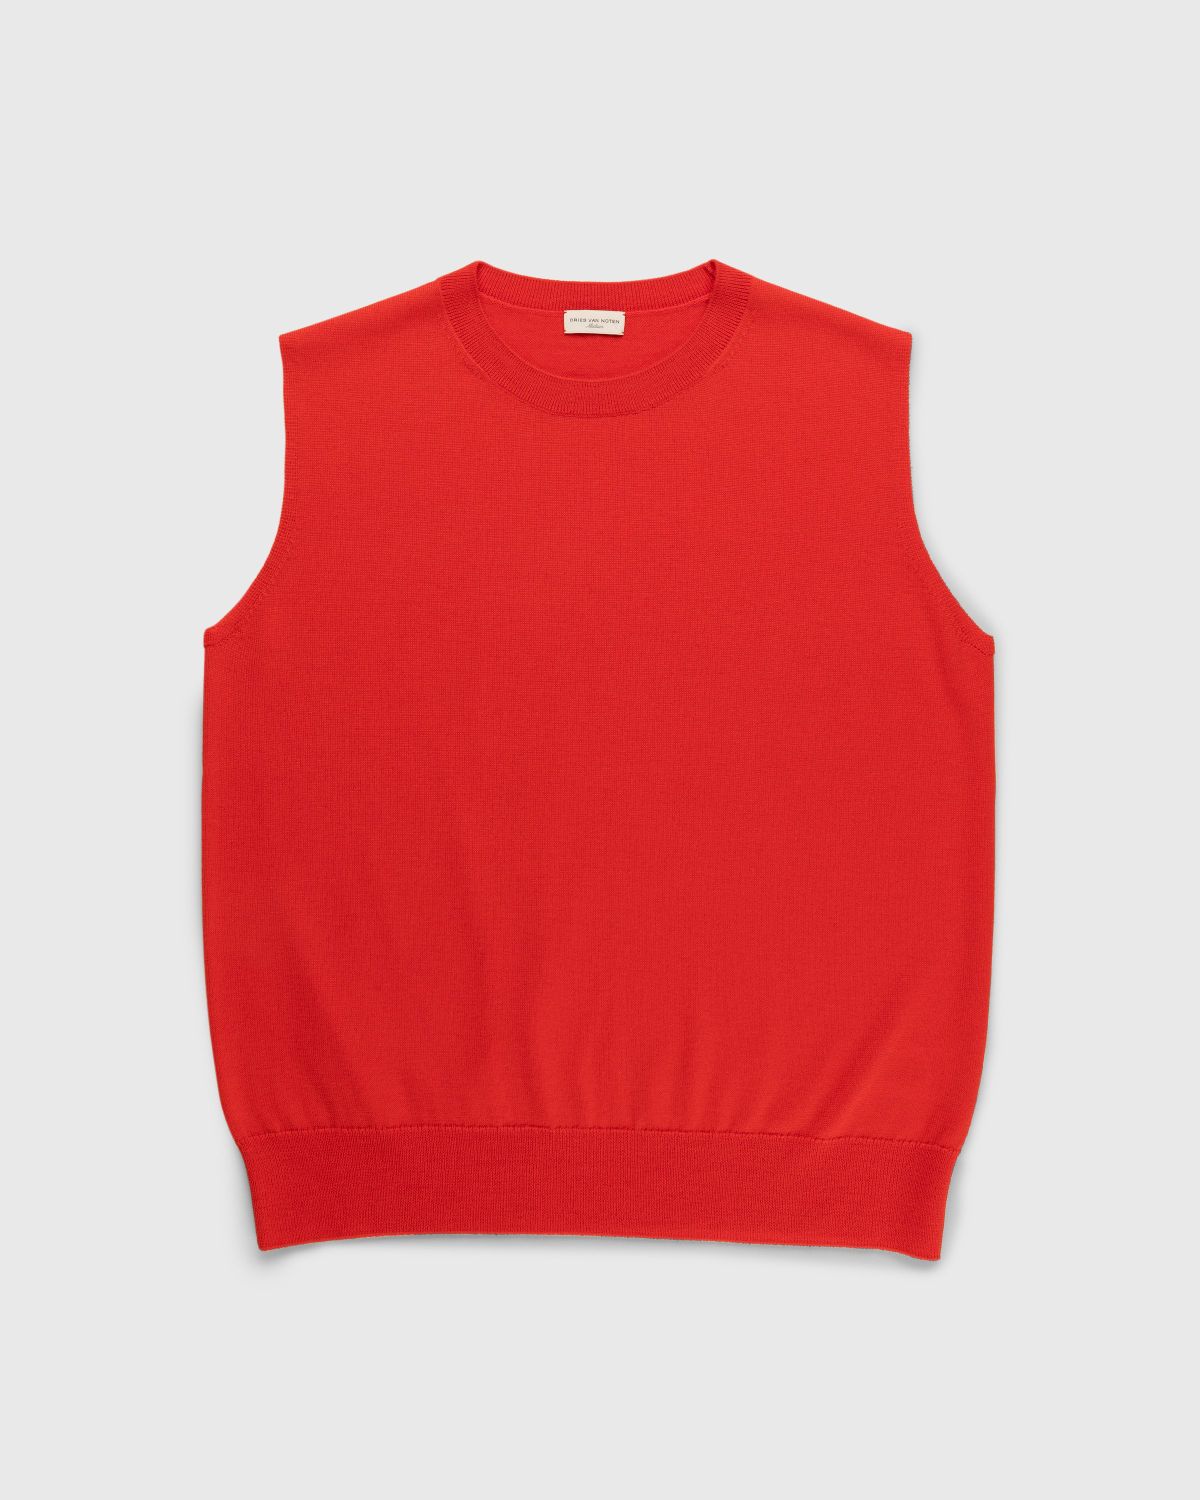 Dries van Noten – Neptune Sweater Vest Red - Knitwear - Red - Image 1